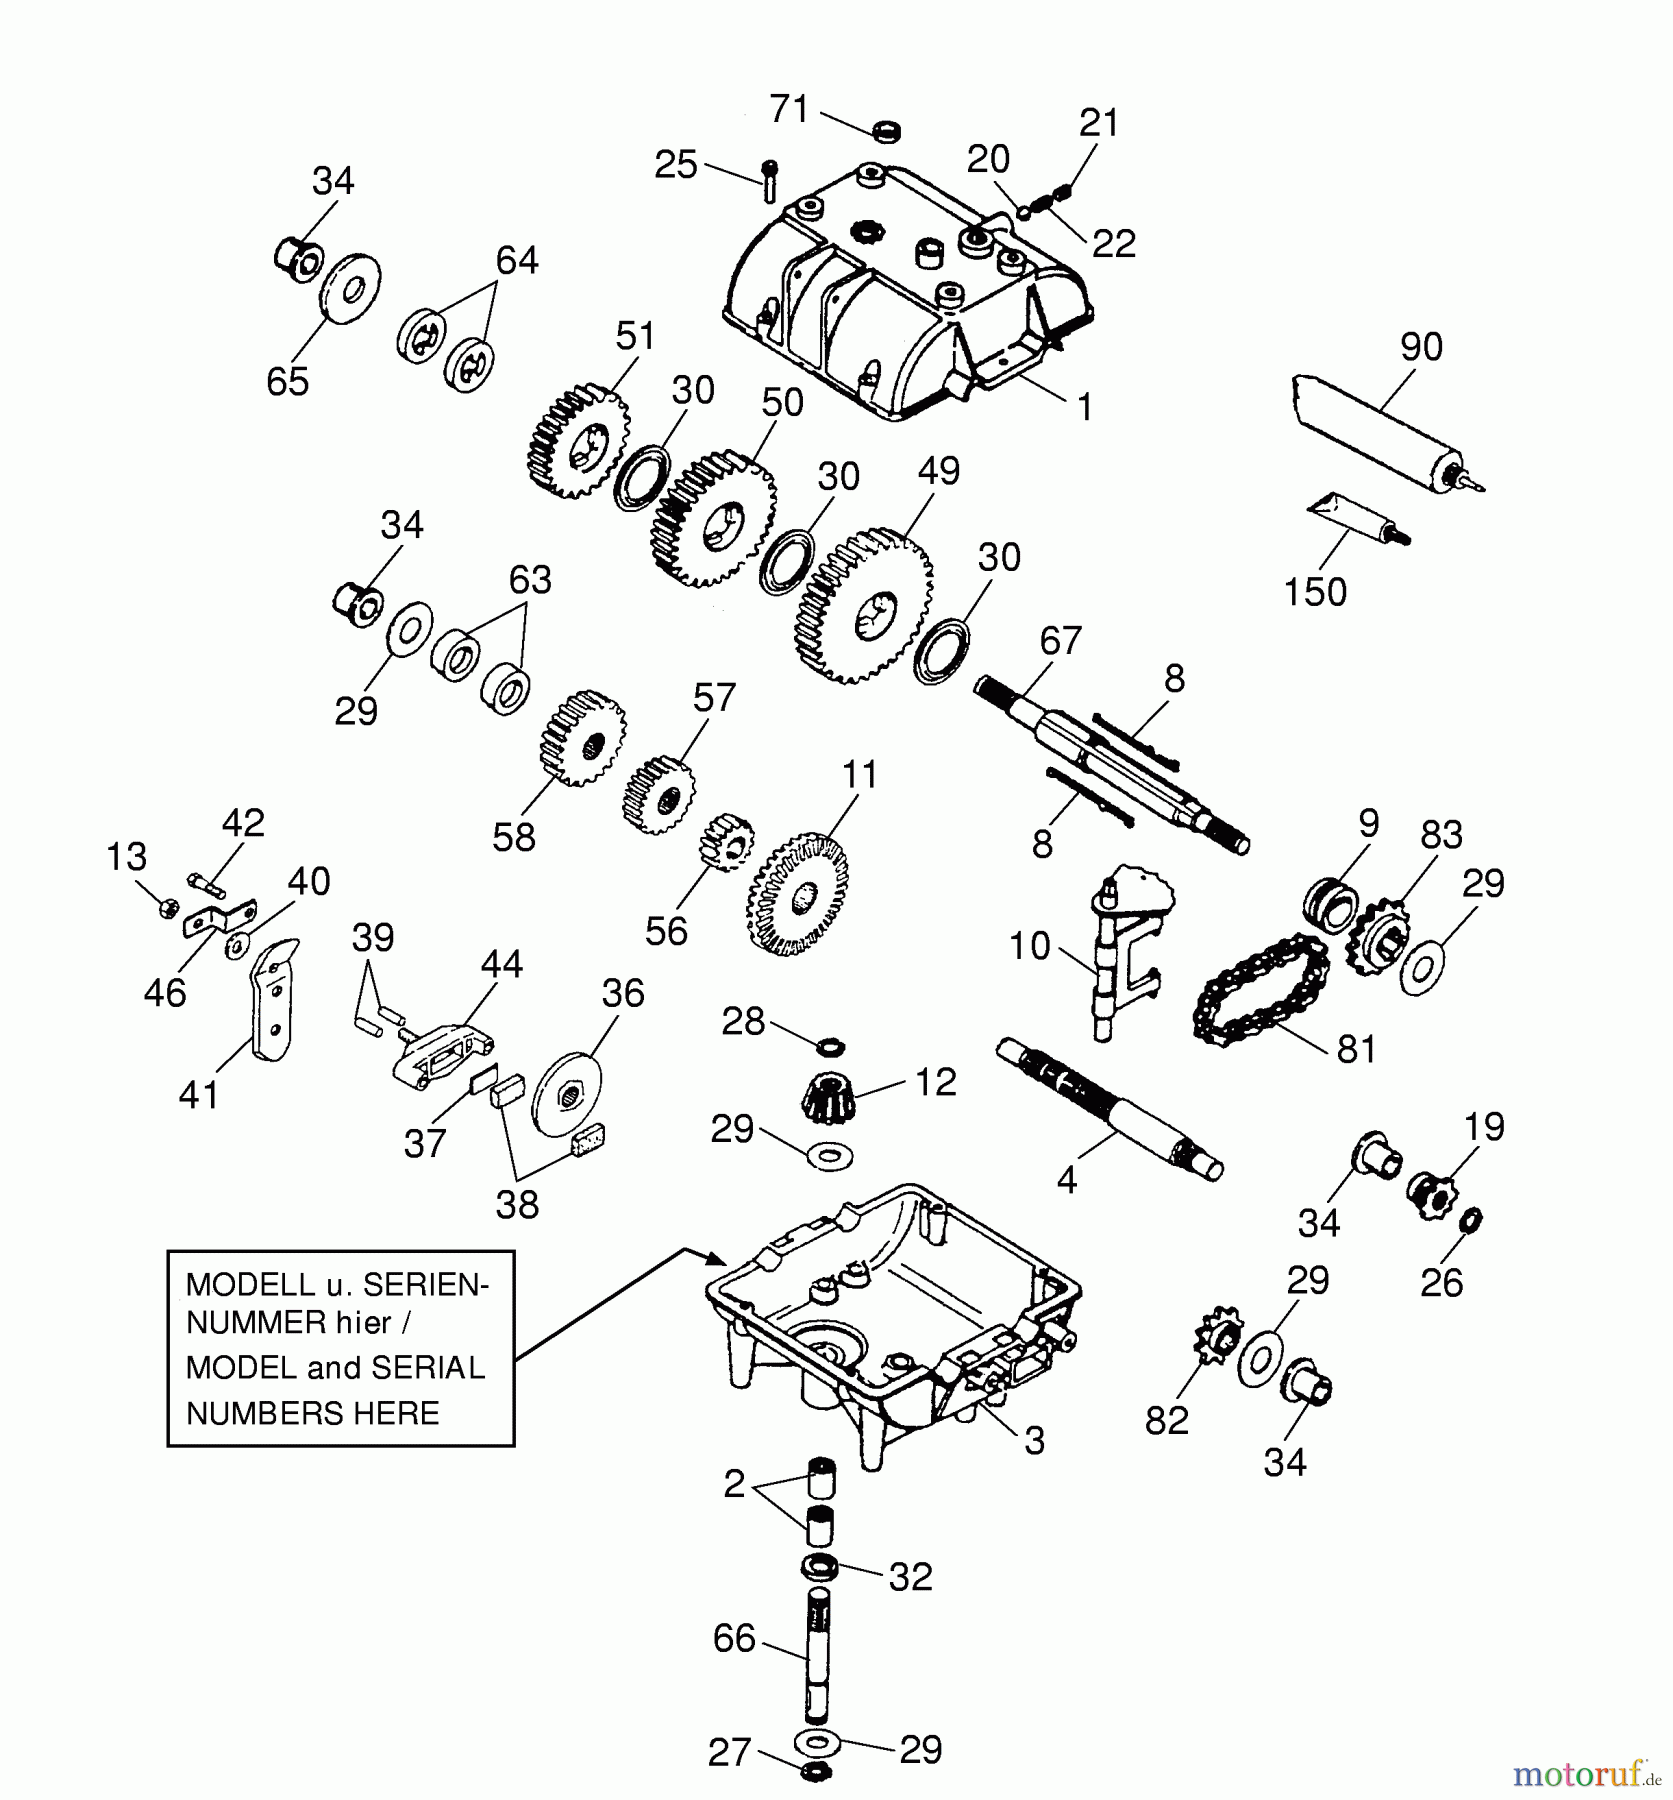  Wolf-Garten Scooter OHV 3 6995000 Serie A  (2001) Getriebe